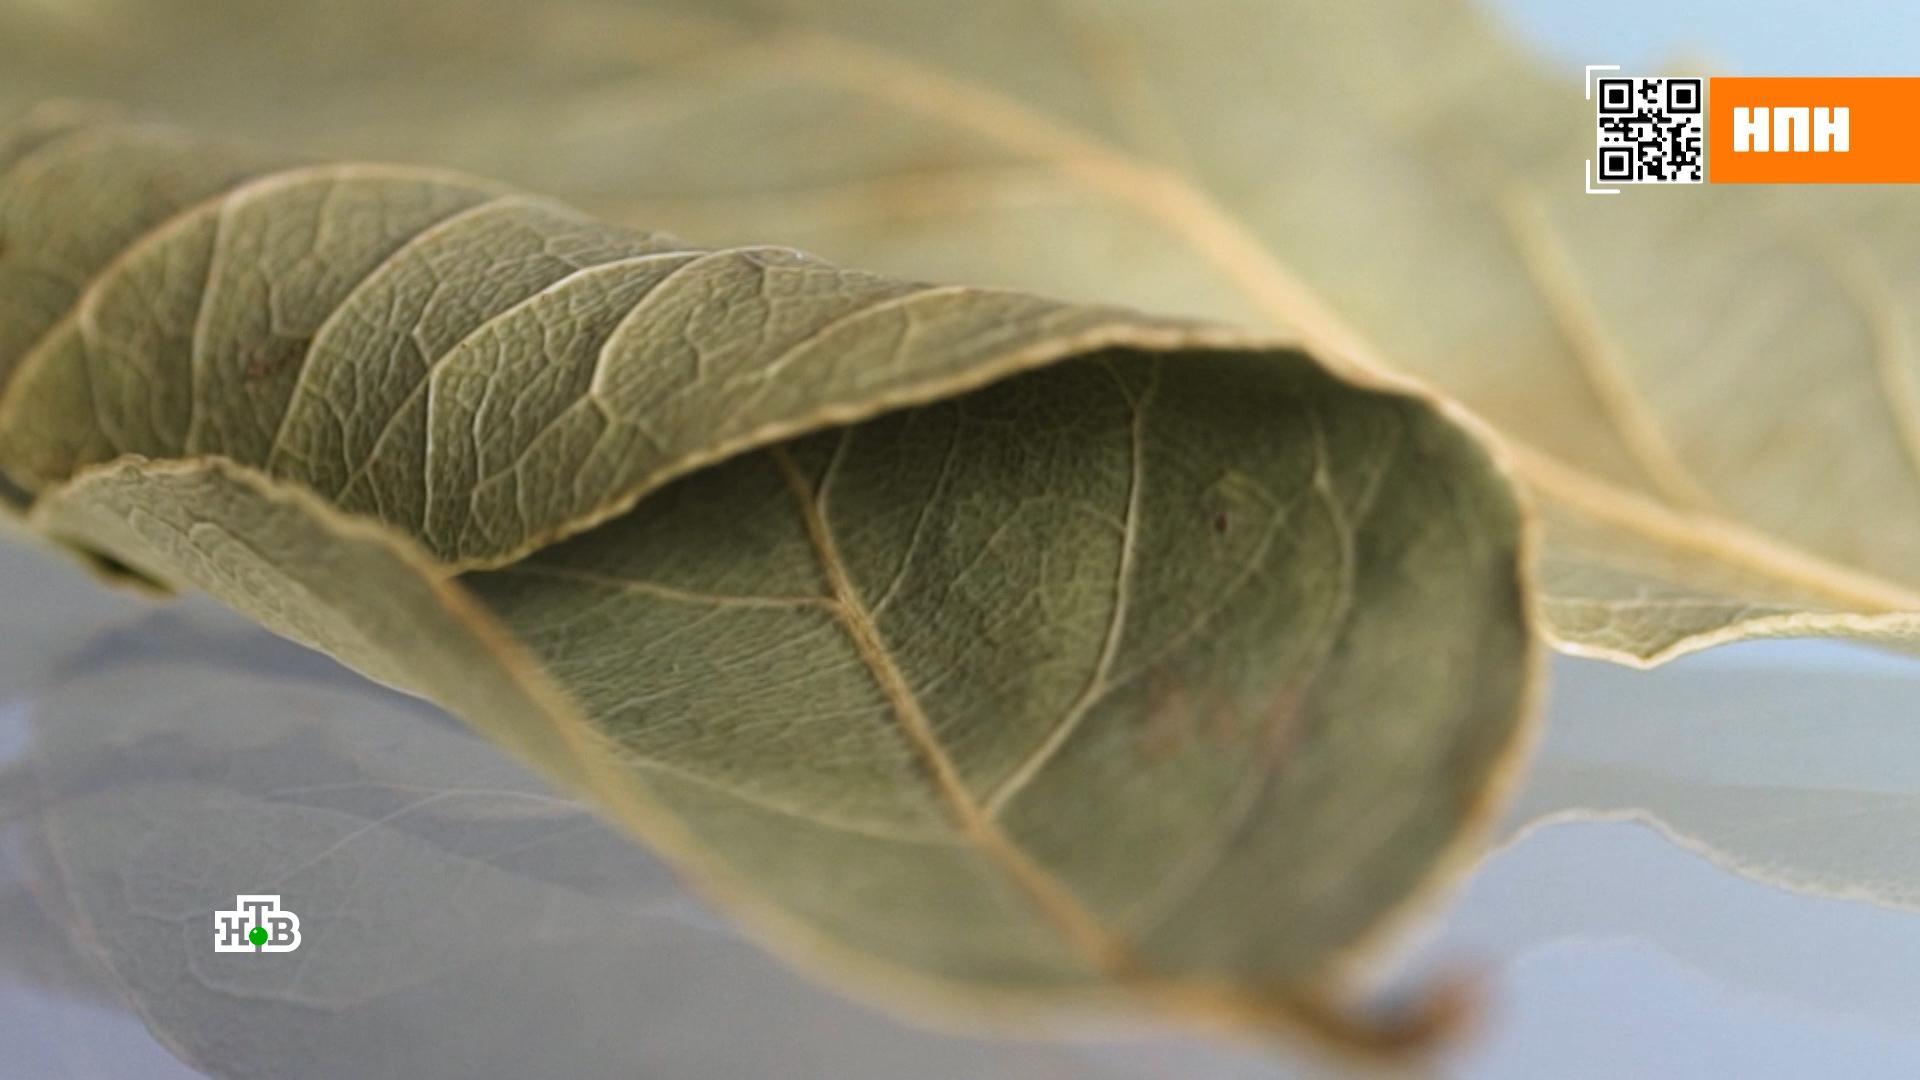 Польза лавровых листьев и их возможный вред| от Роскачества